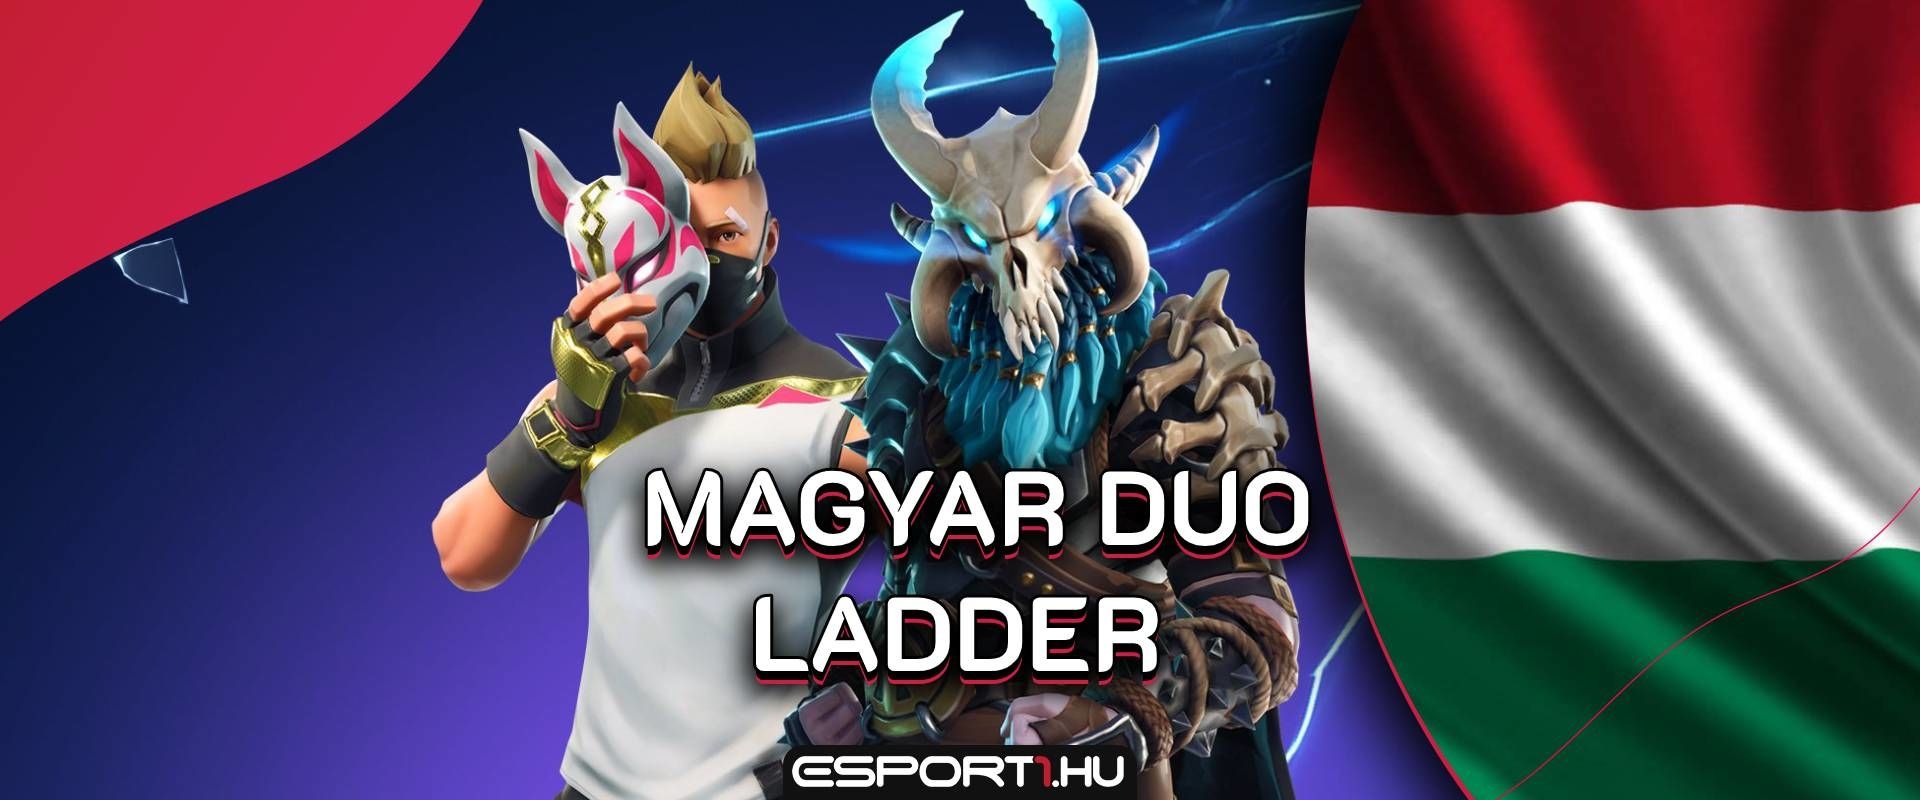 Fejlődj együtt honfitársaiddal, rendszeres játékkal vár a Magyar Duo Ladder közösség